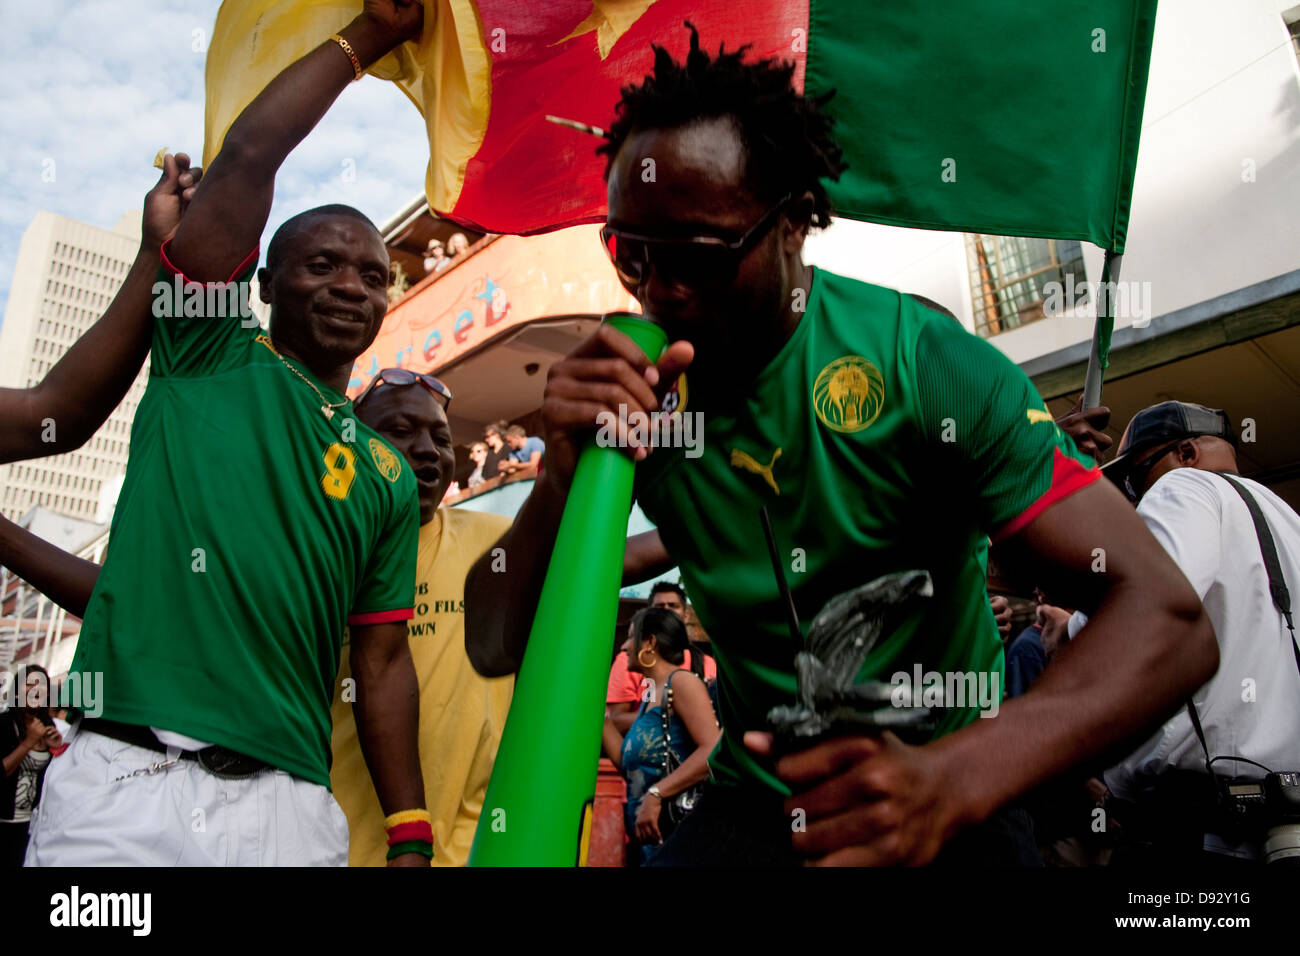 Un fanático del fútbol camerunés golpes vuvazula mientras amigo ondas bandera camerunesa por encima de él durante el sorteo final de la Copa Mundial de la FIFA Foto de stock